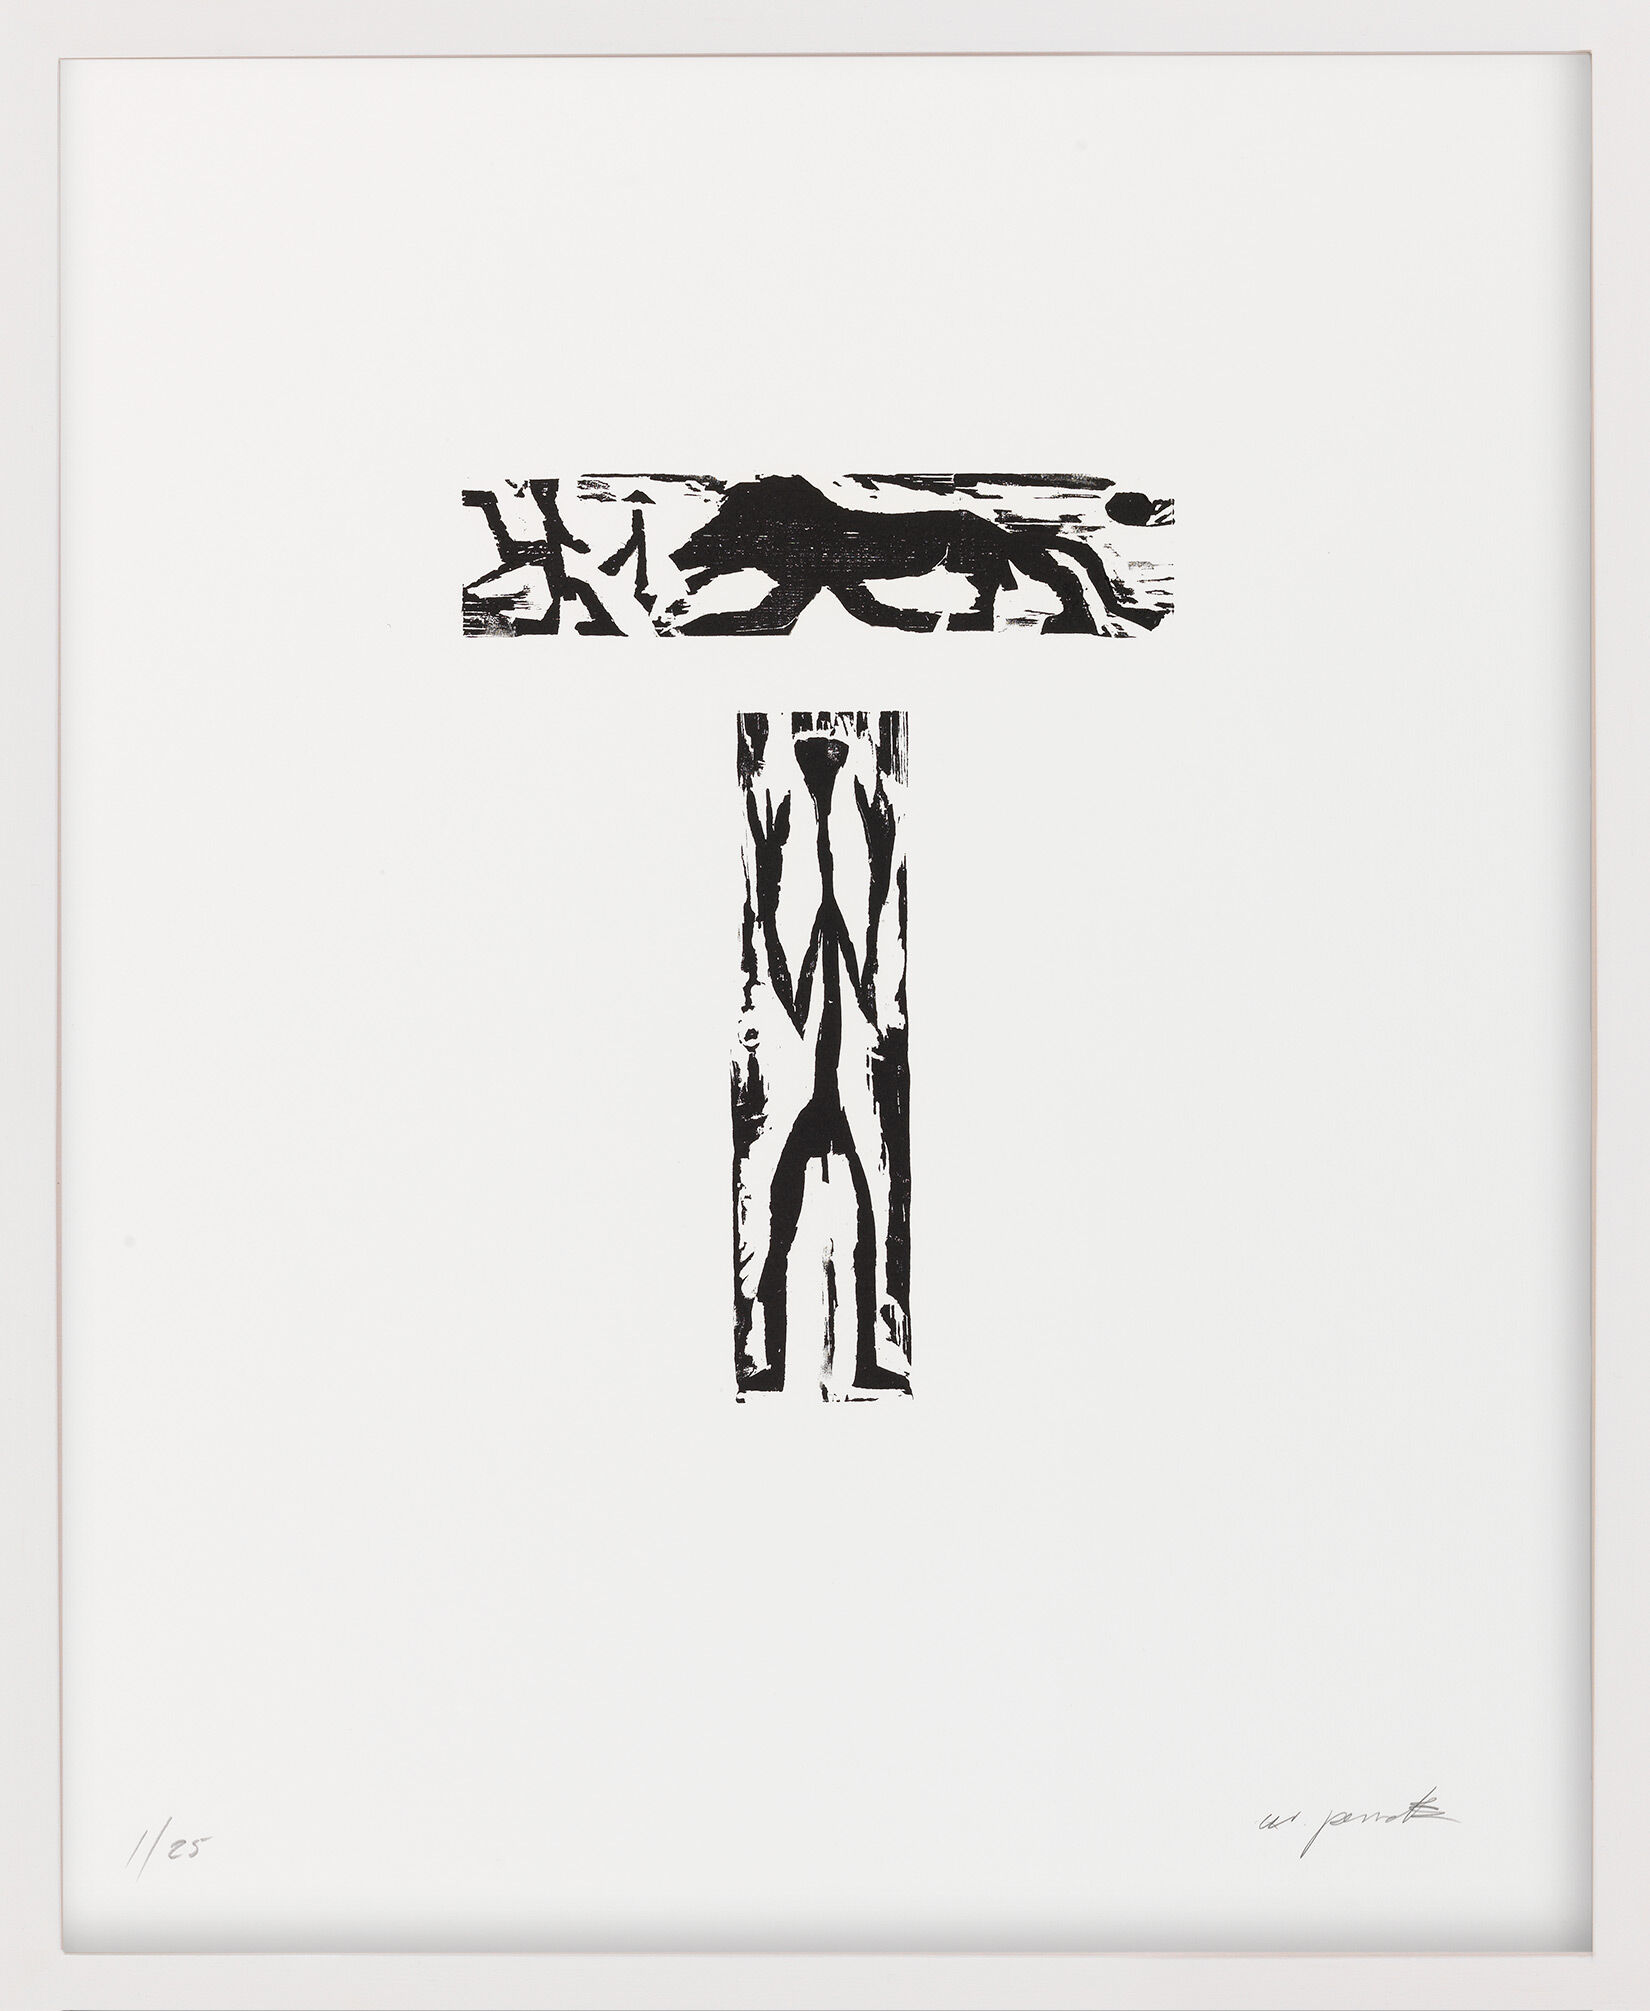 Tableau "Sans titre" (1988/89) von A. R. Penck